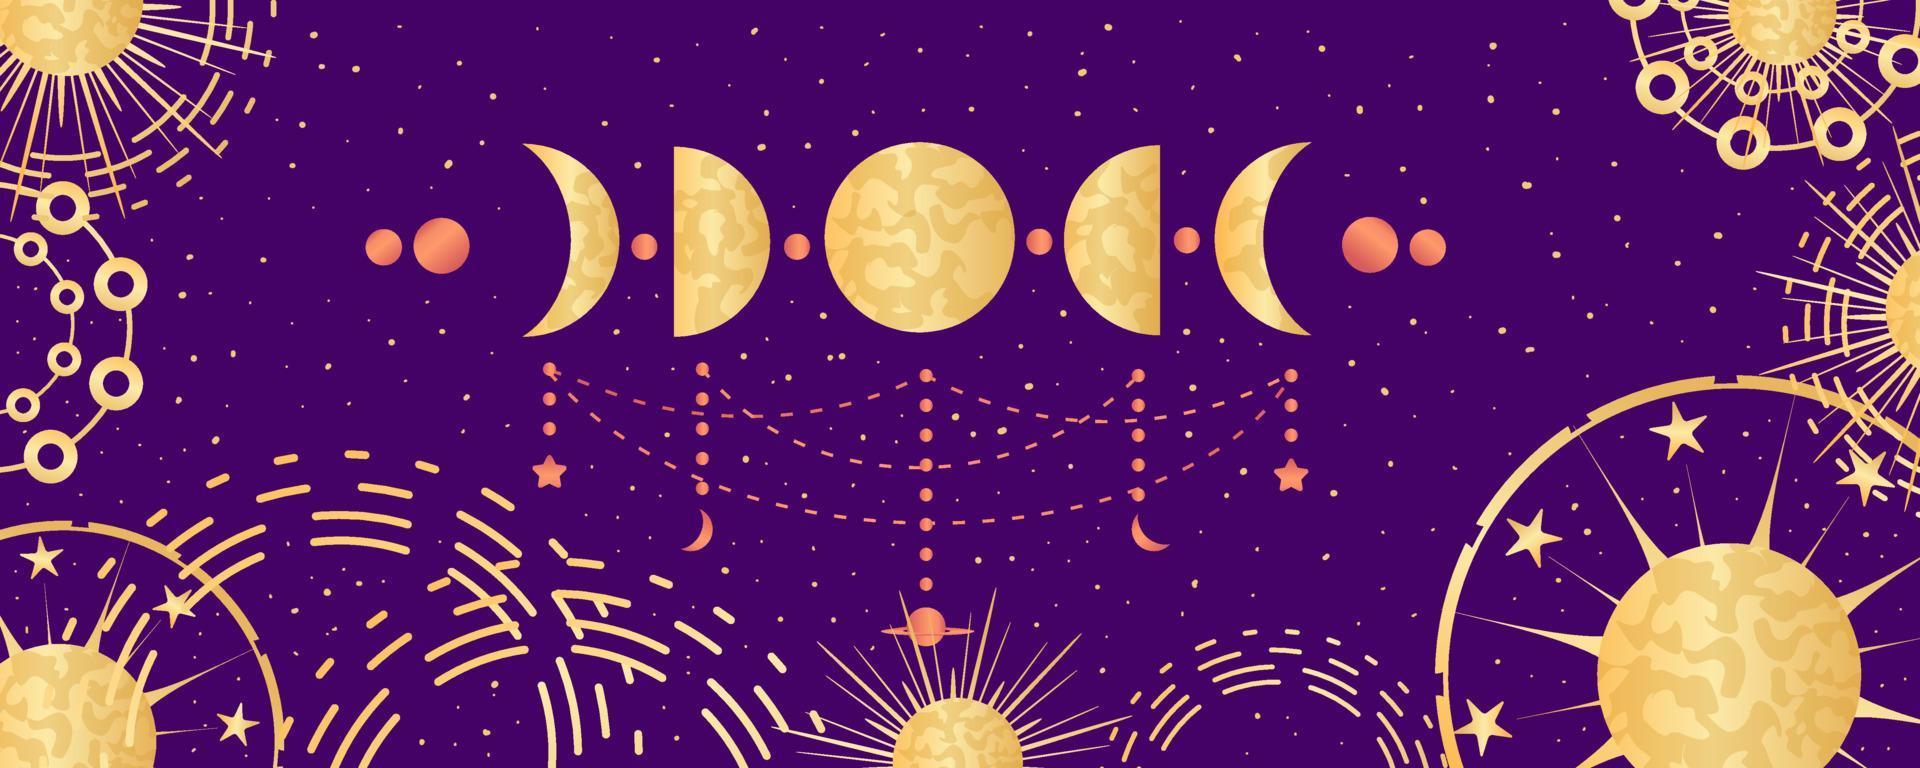 fondo astrológico celestial con fase lunar y constelaciones. astrología mística, espacio celestial con signos dorados. ilustración vectorial vector